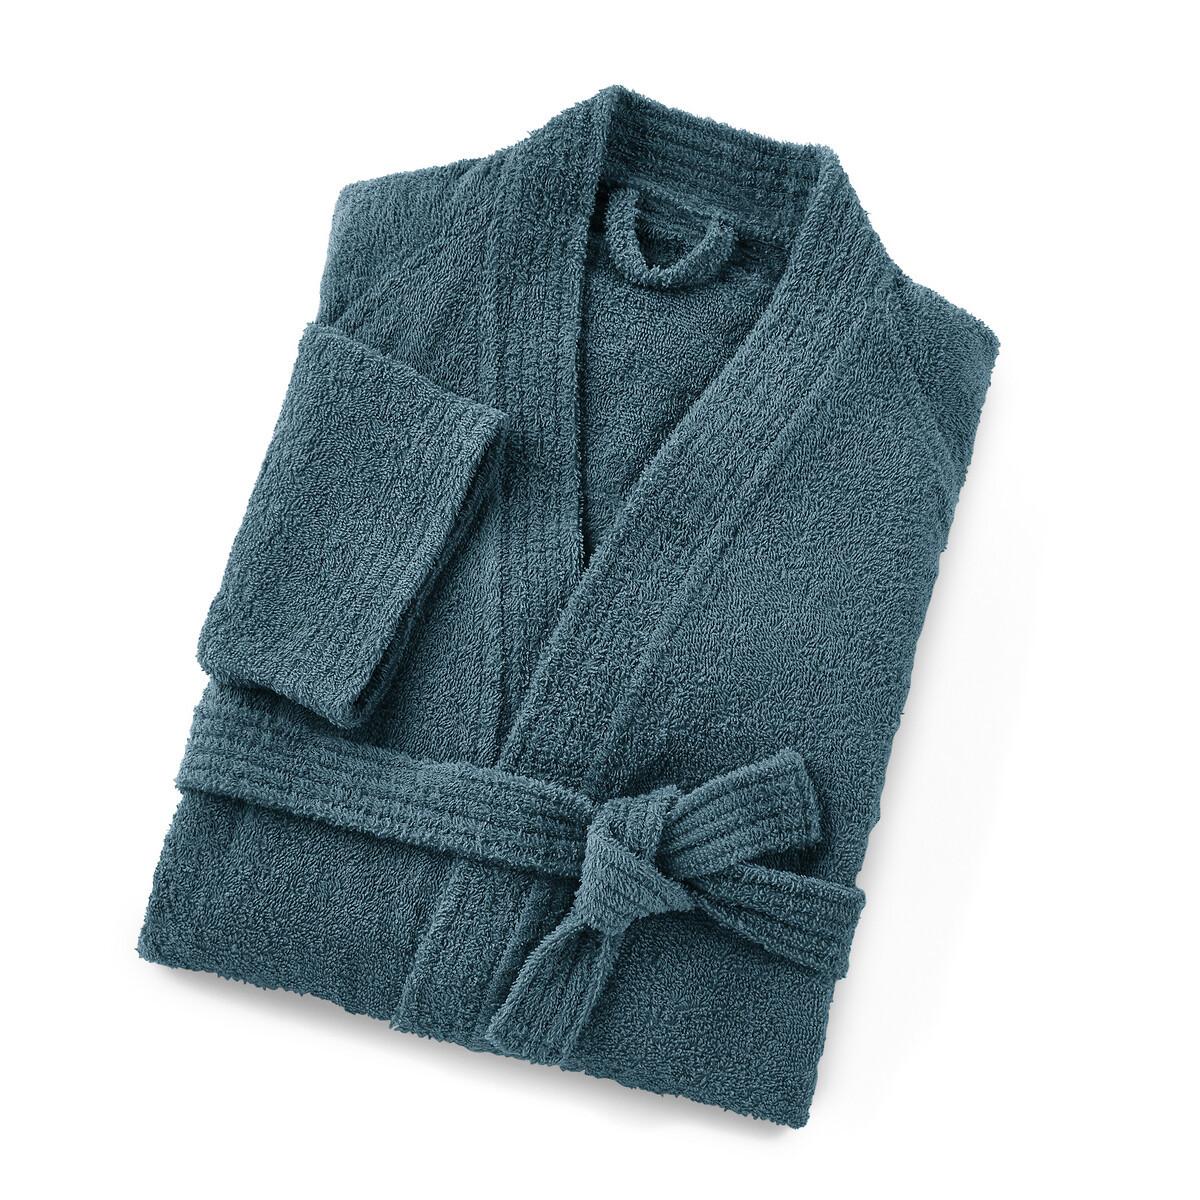 Kimono-bademantel Scenario (350 G/m²) Für Erwachsene Damen Blau 48/50 von La Redoute Intérieurs